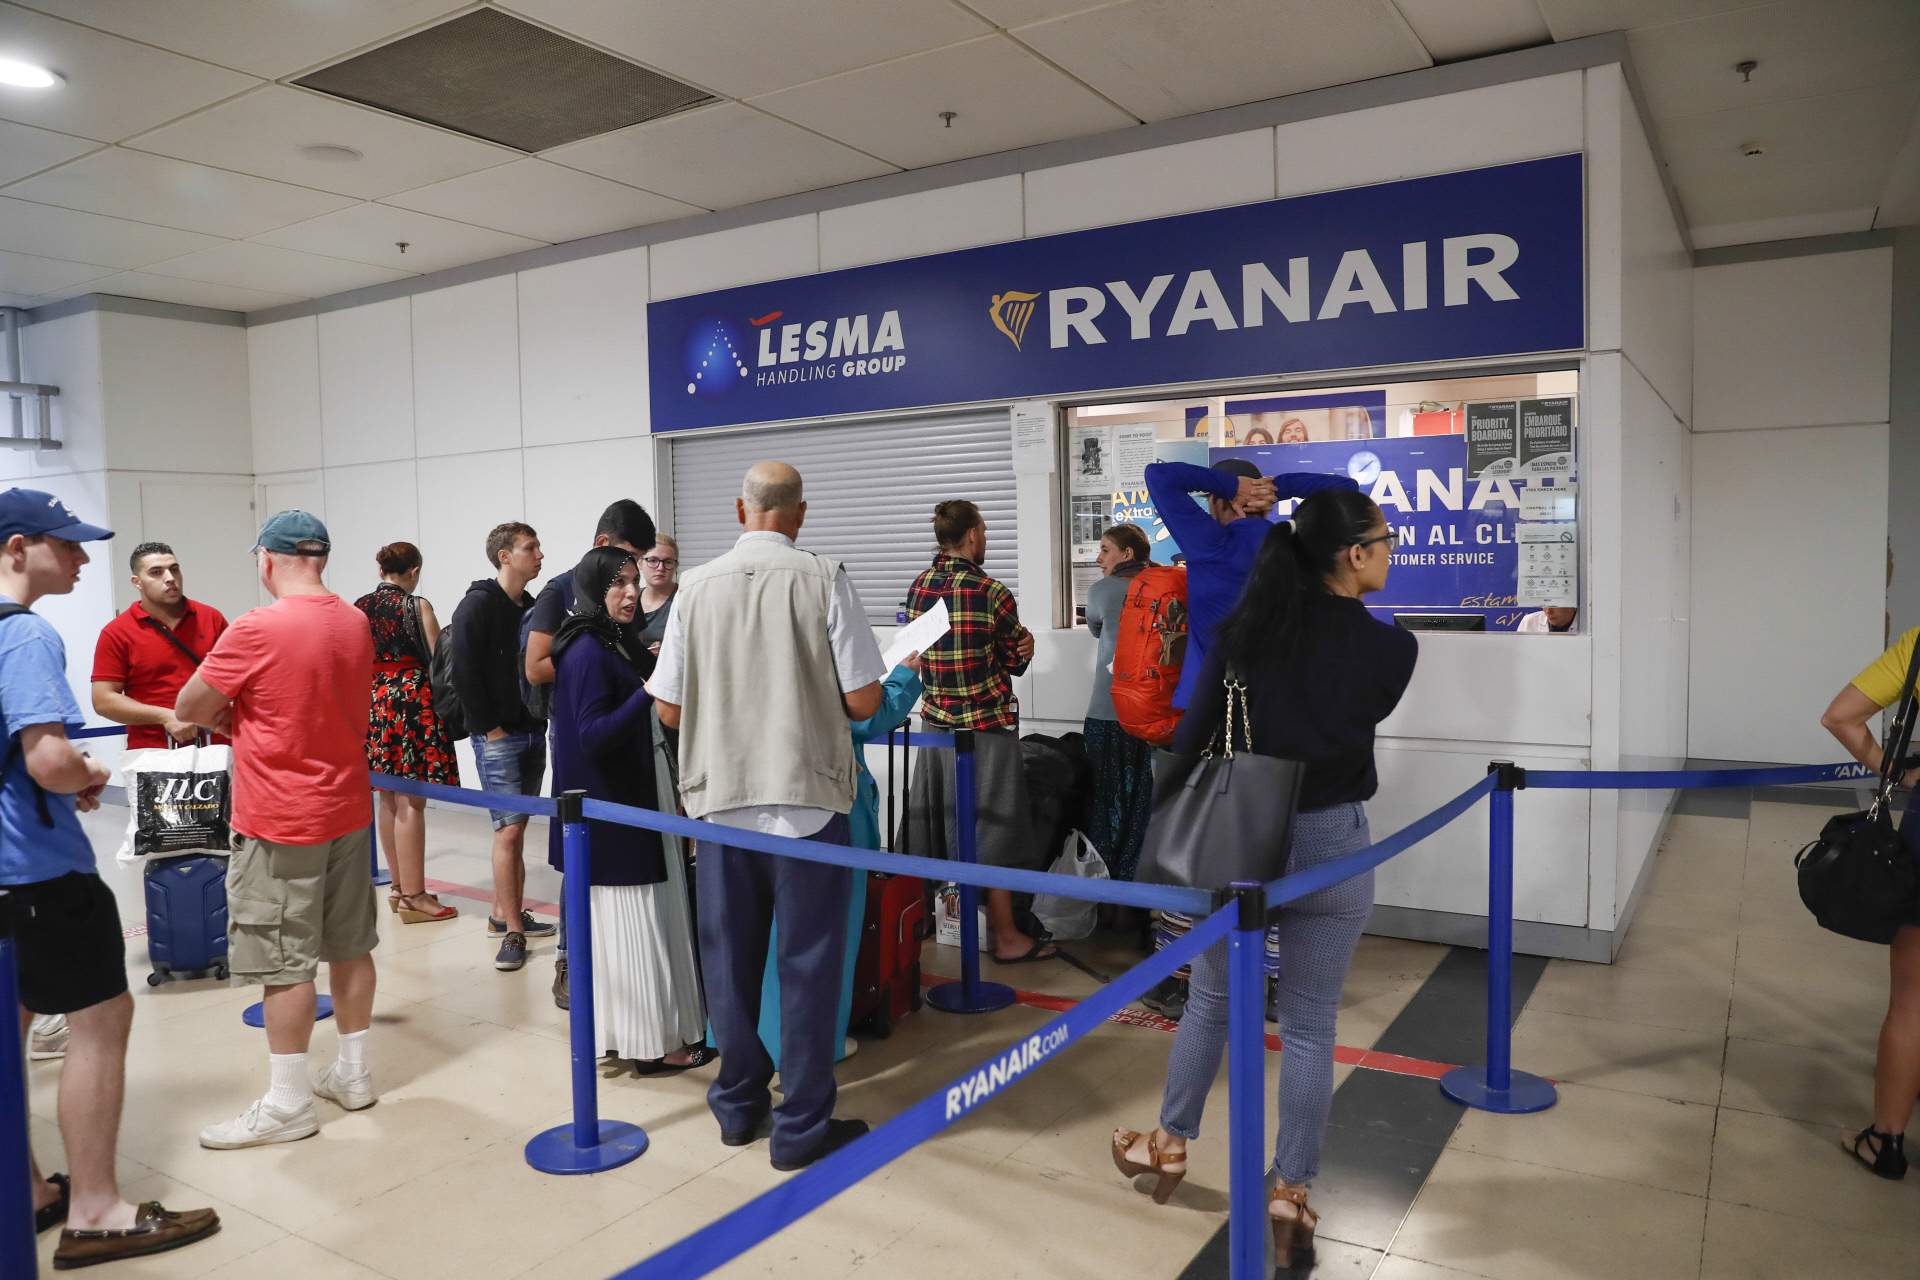 VIP de TV3 abandonada hores dins l'avió de Ryanair sense aigua: "Ens enganyen"